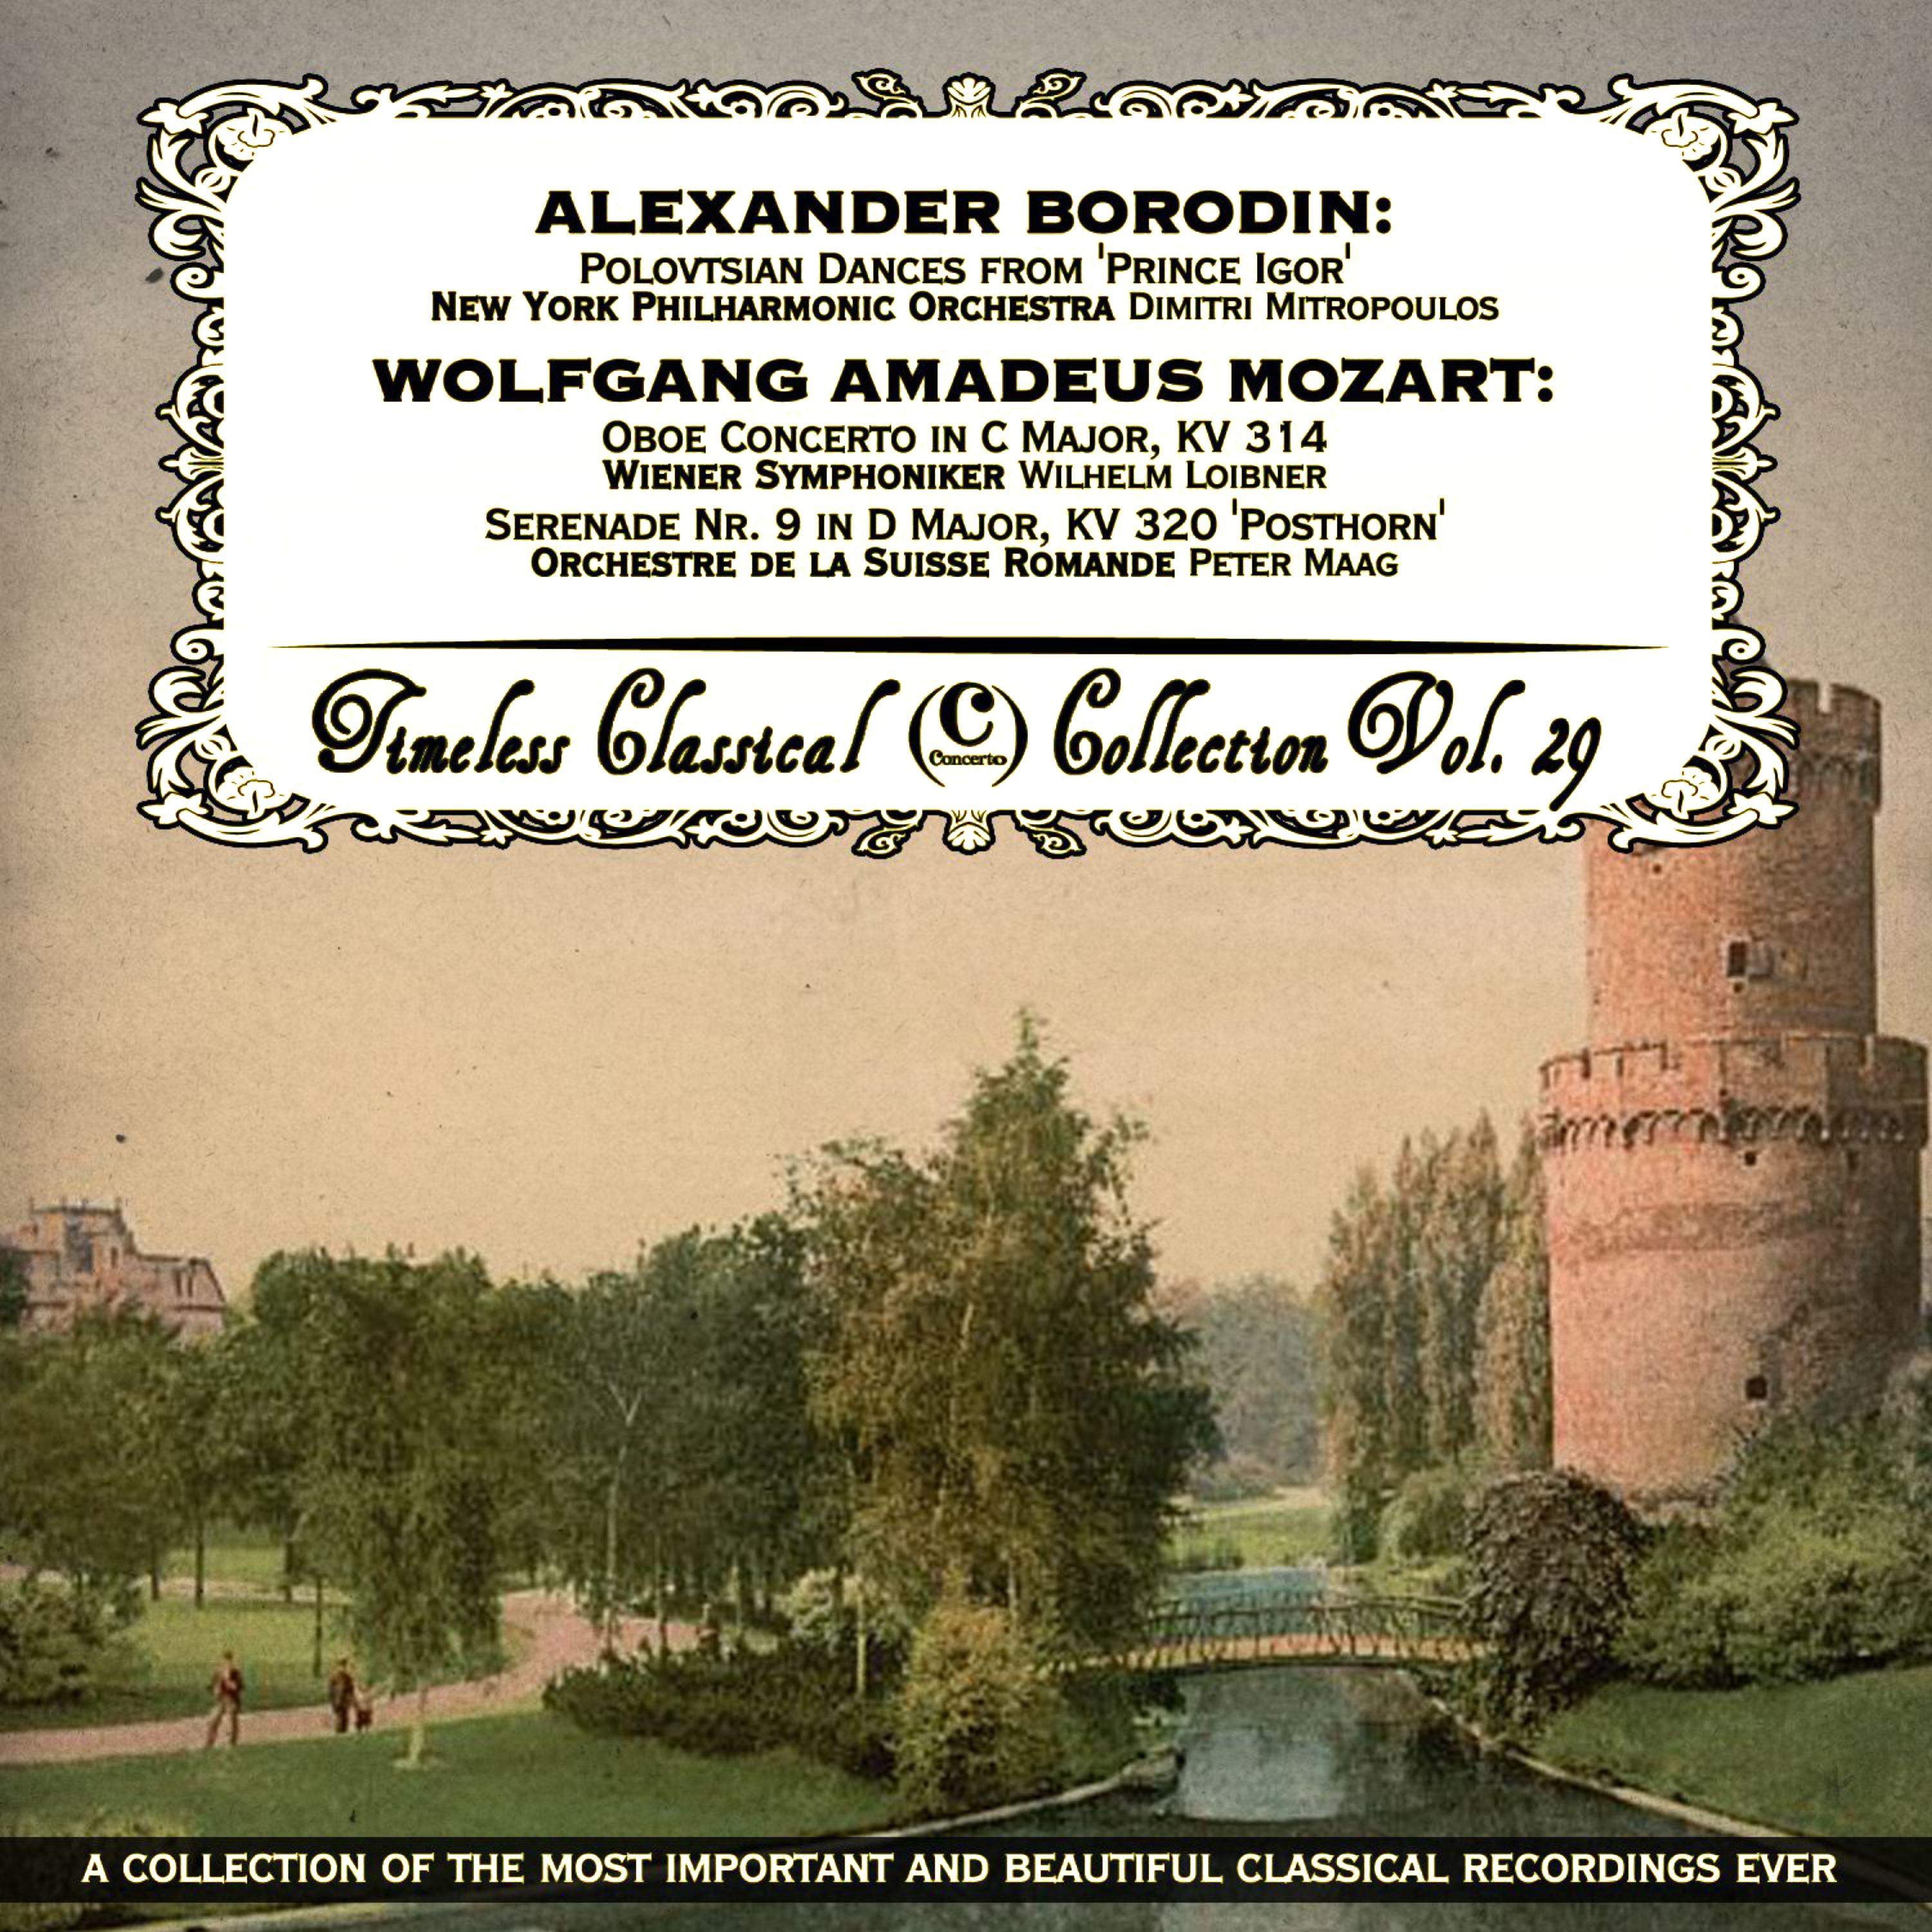 Oboe Concerto in C Major, KV 314: III. Rondo - Allegretto